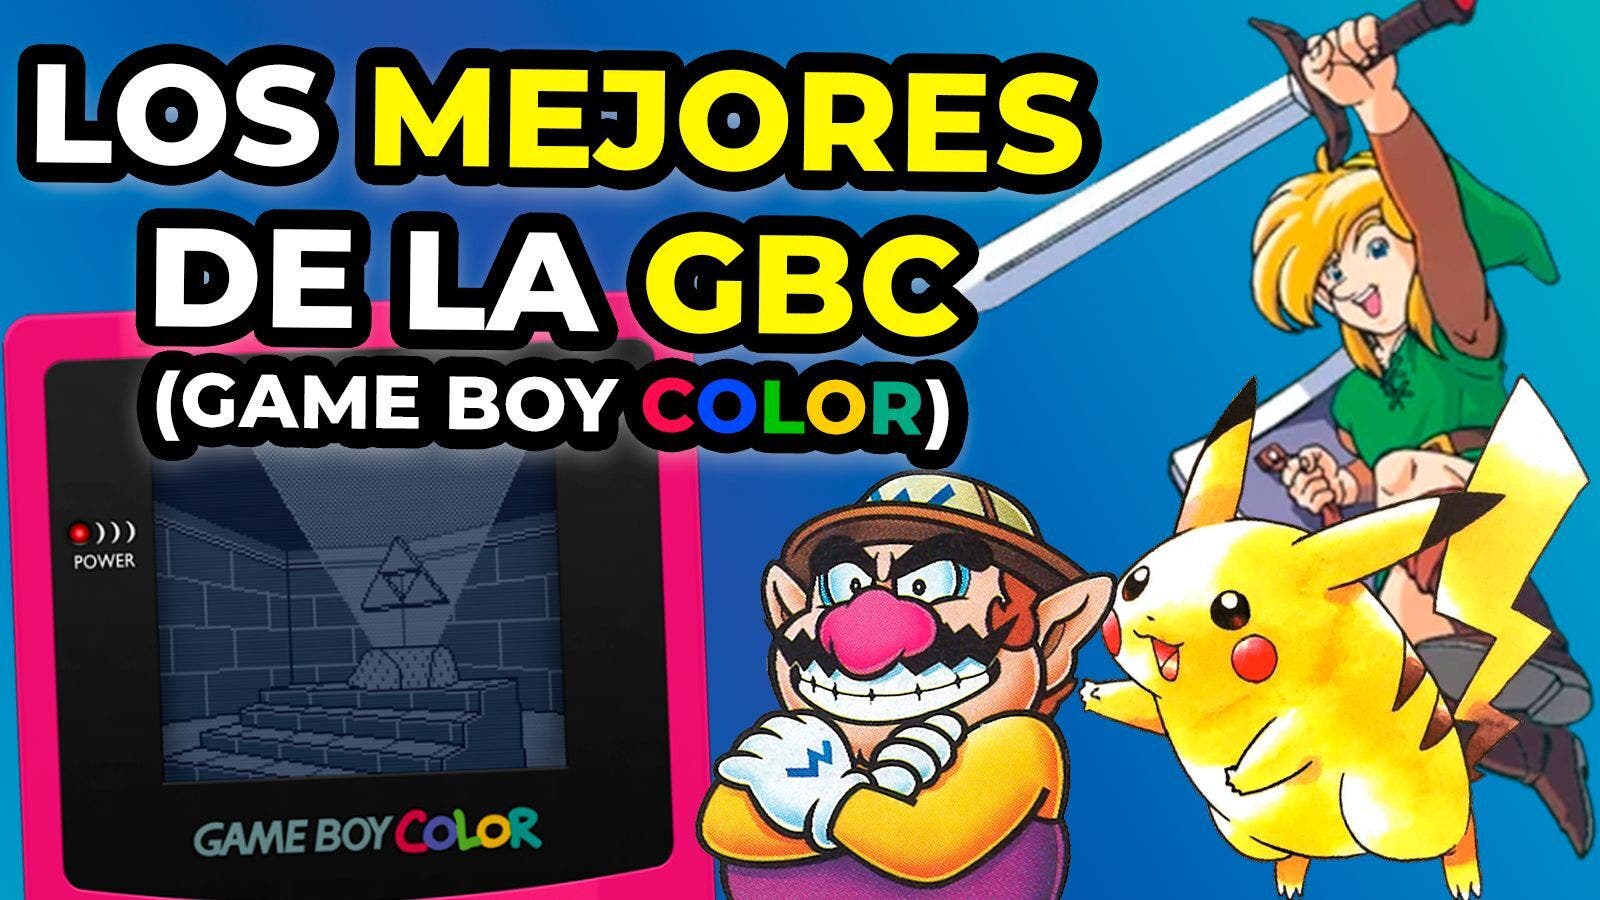 Los 10 mejores juegos de Game Boy Color